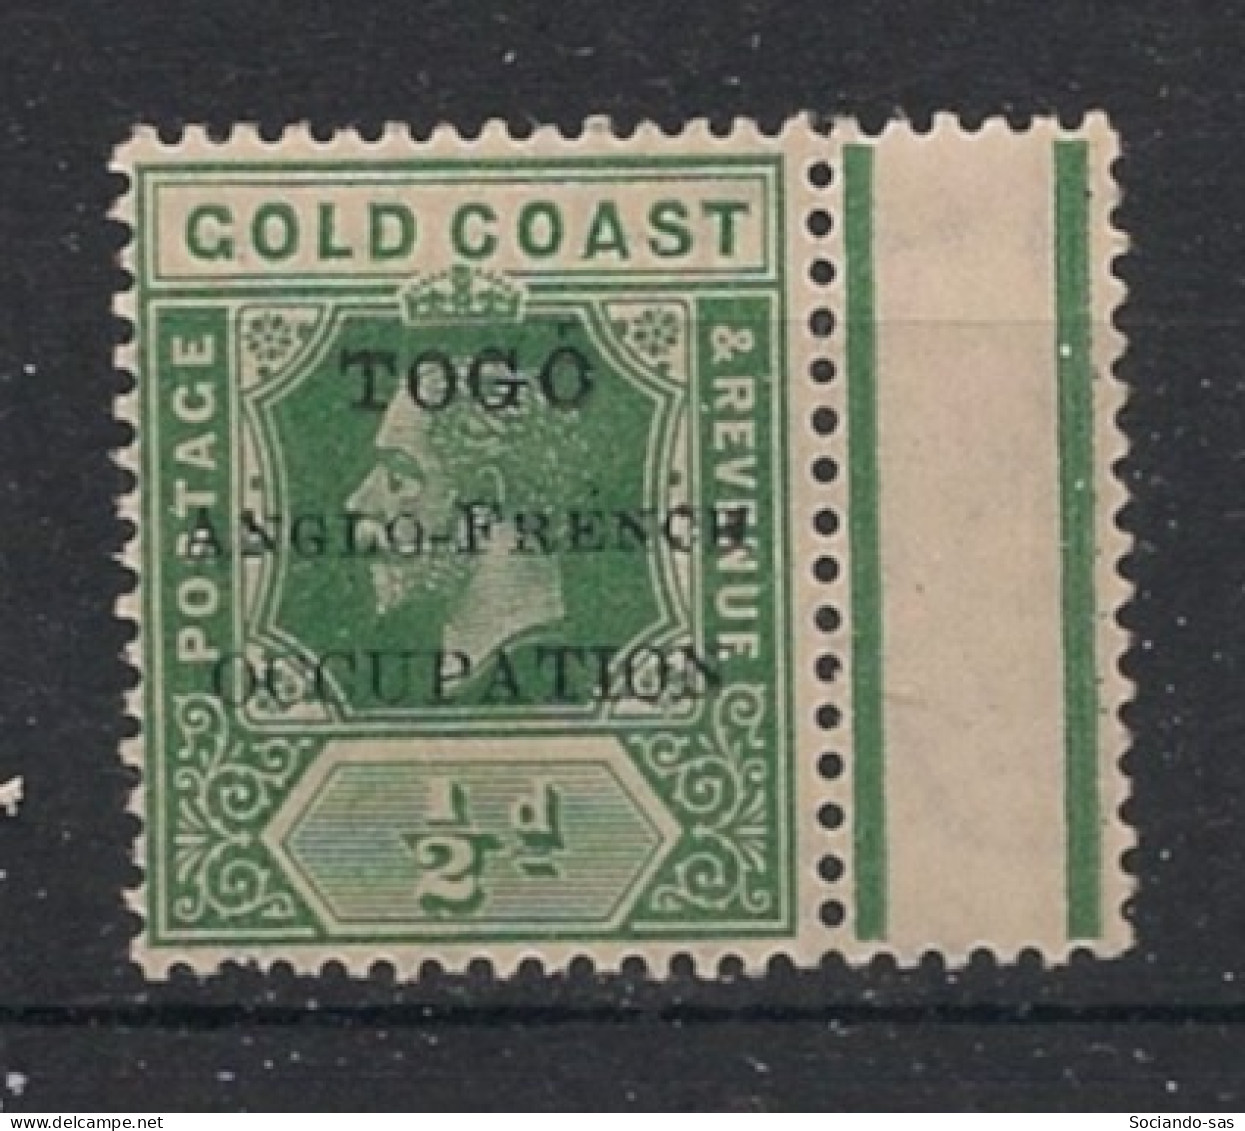 TOGO - 1915 - N°YT. 59 - Gold Coast 1/2p Vert - Neuf Luxe** / MNH / Postfrisch - Ungebraucht